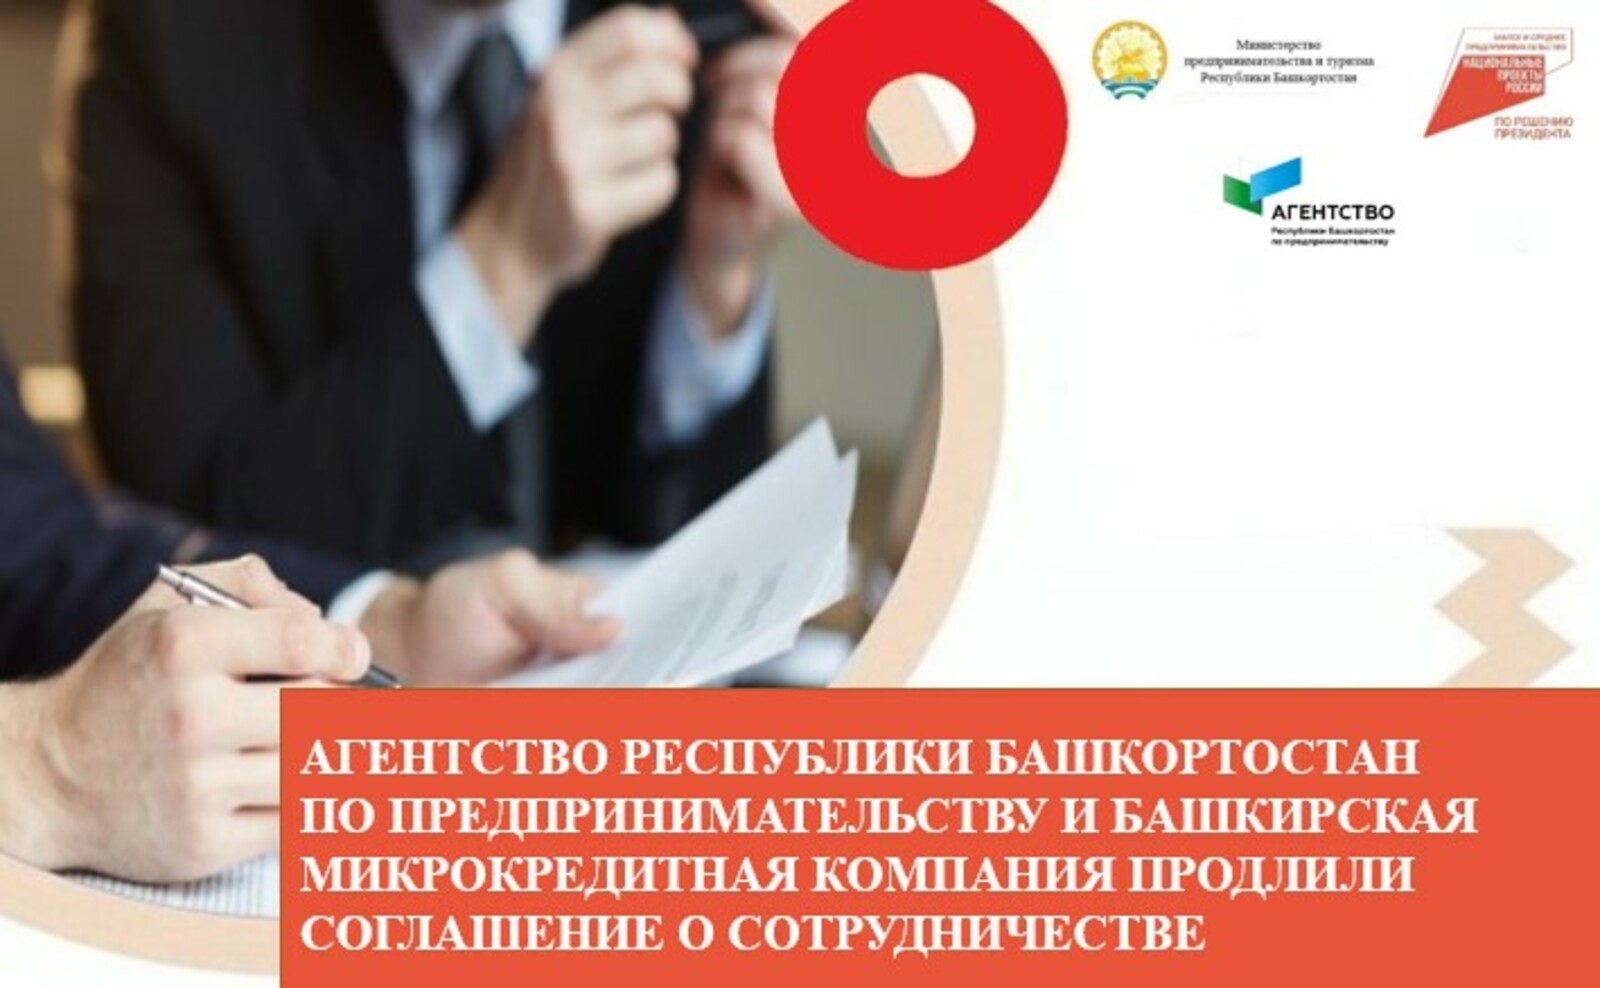 Агентство Республики Башкортостан по предпринимательству и Башкирская микрокредитная компания продлили соглашение о сотрудничестве